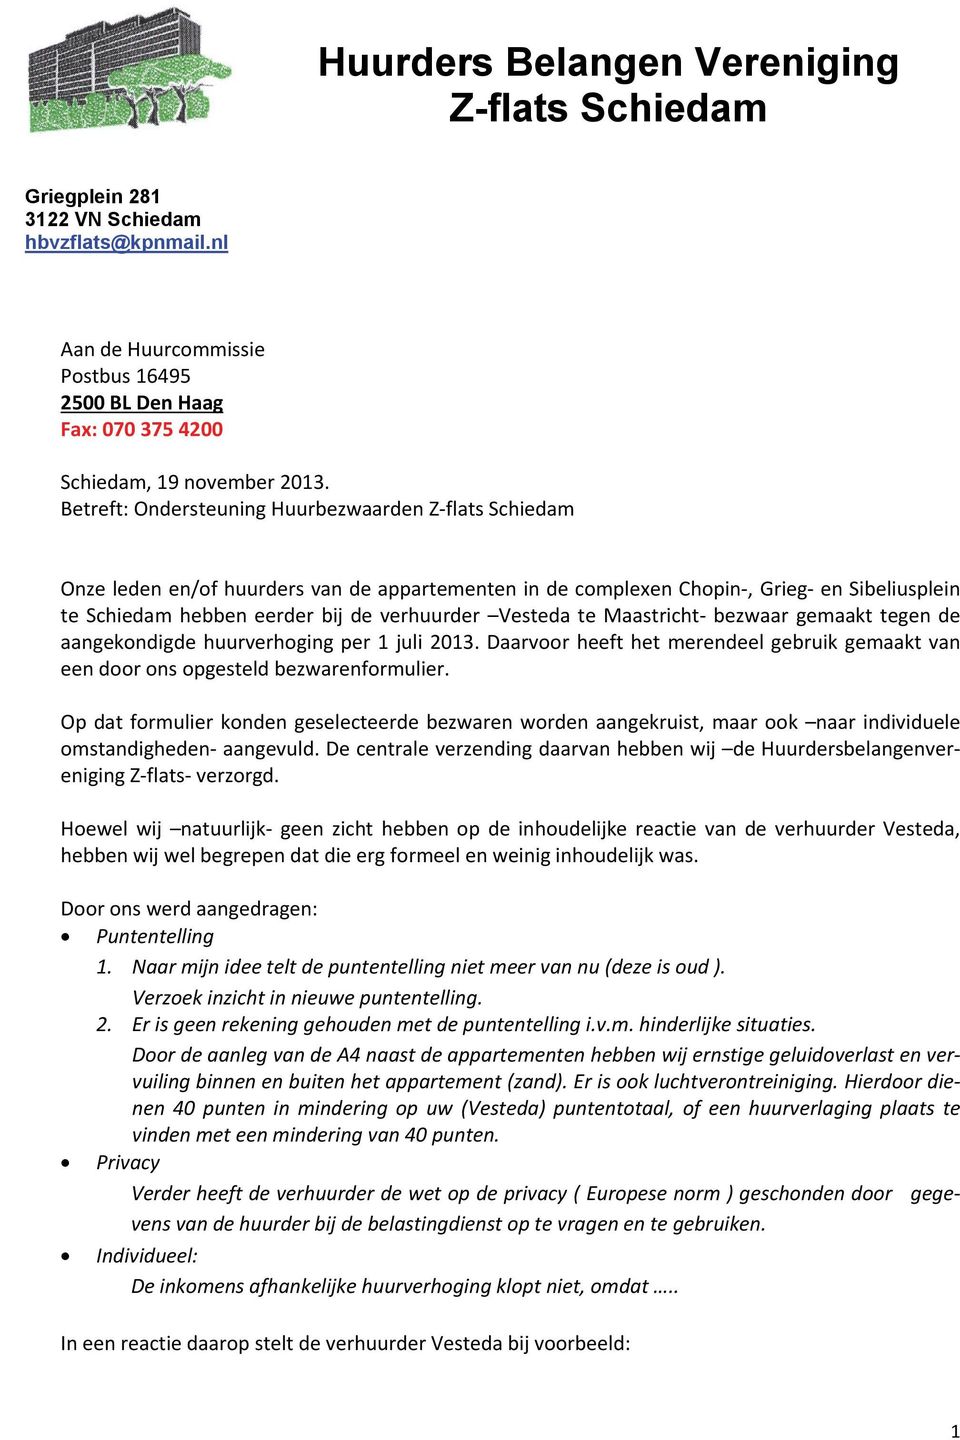 Vesteda te Maastricht bezwaar gemaakt tegen de aangekondigde huurverhoging per 1 juli 2013. Daarvoor heeft het merendeel gebruik gemaakt van een door ons opgesteld bezwarenformulier.